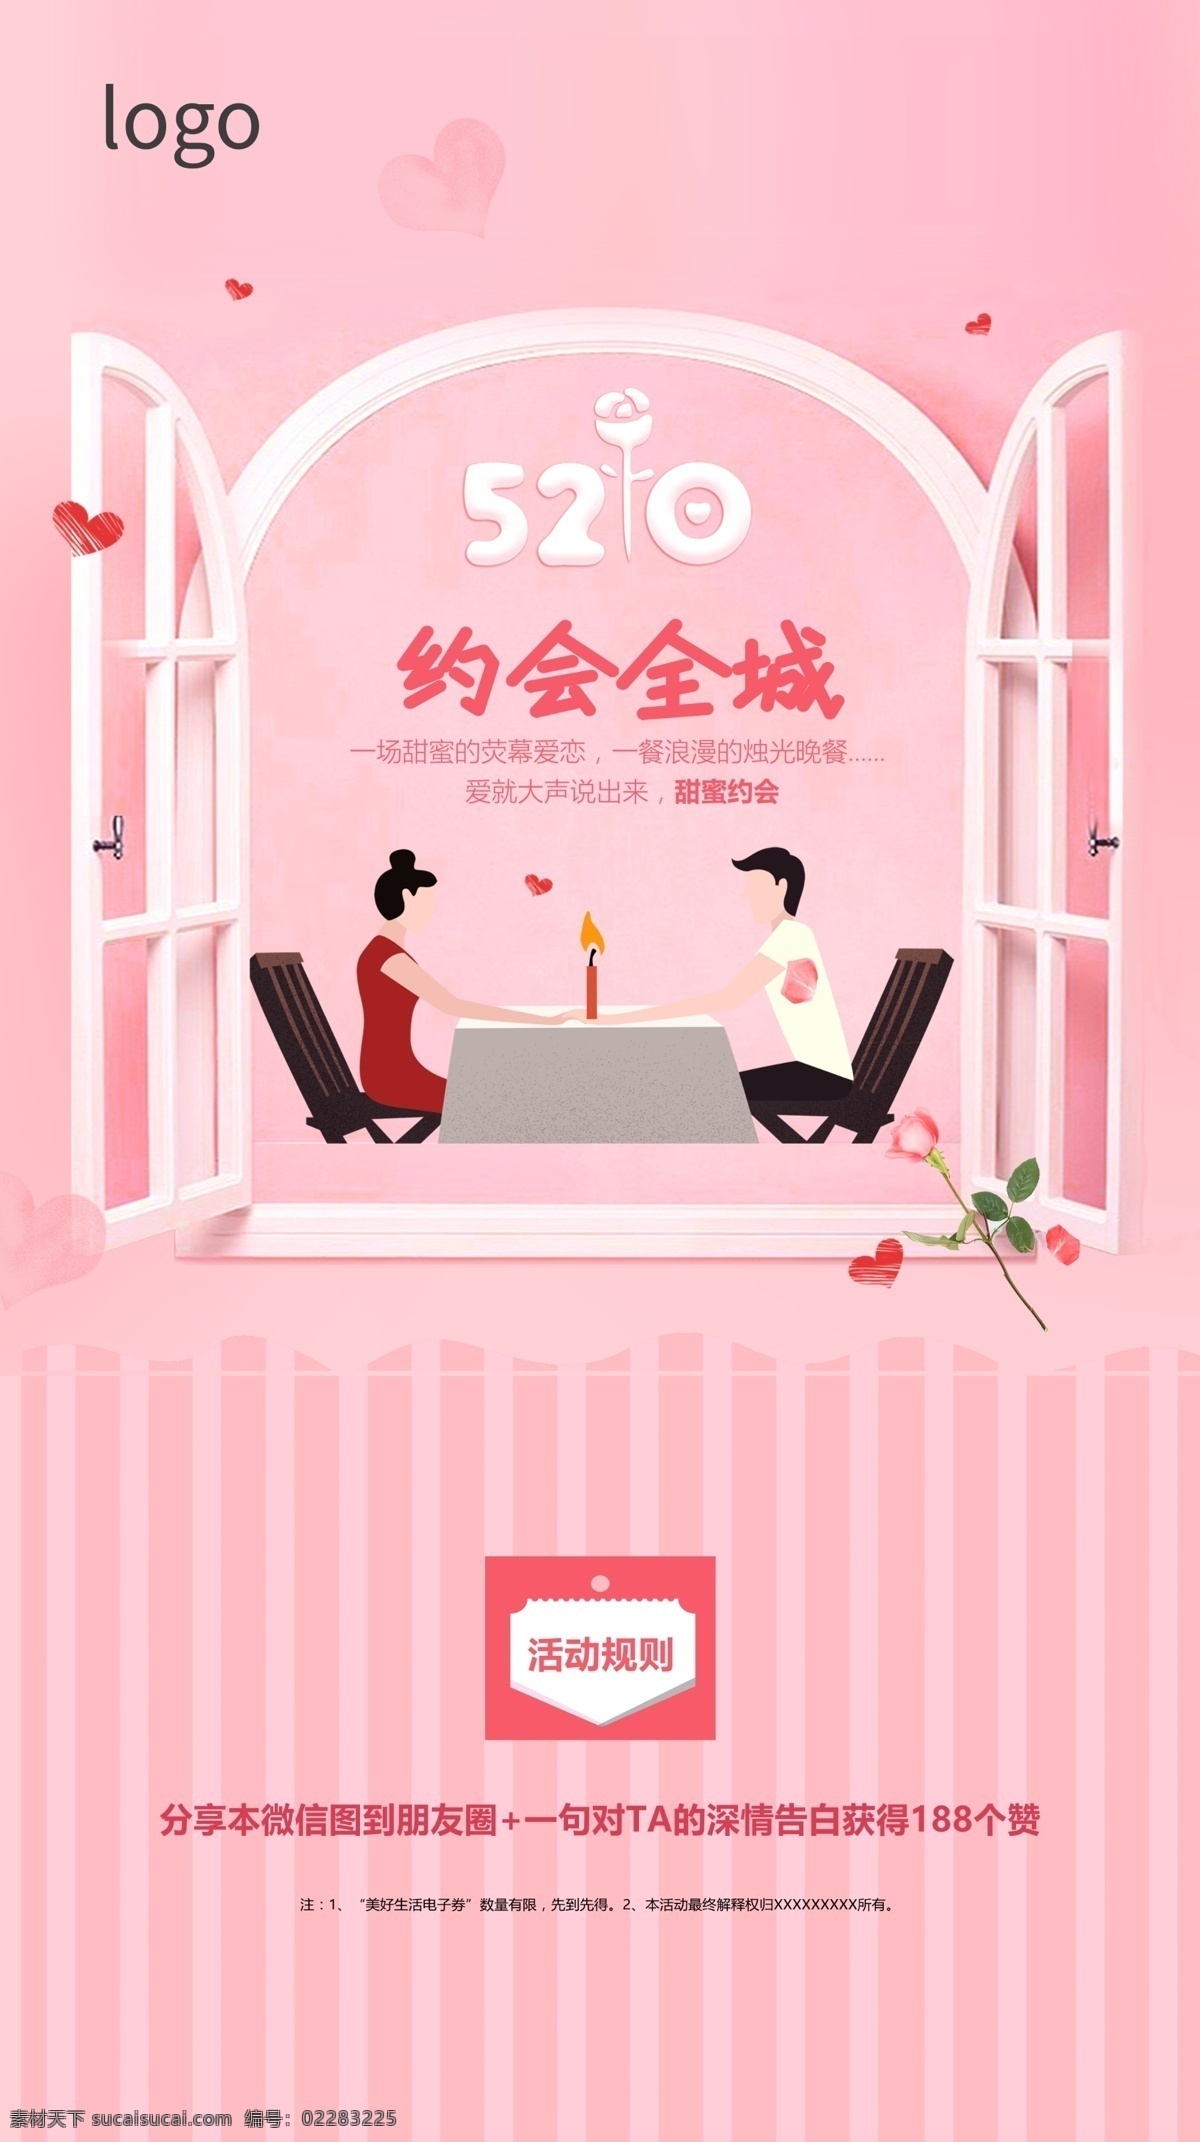 520情人节 520 情人节 粉色 温馨 暖场活动 情人节活动 粉色背景 美式窗户 520海报 元素素材 分层